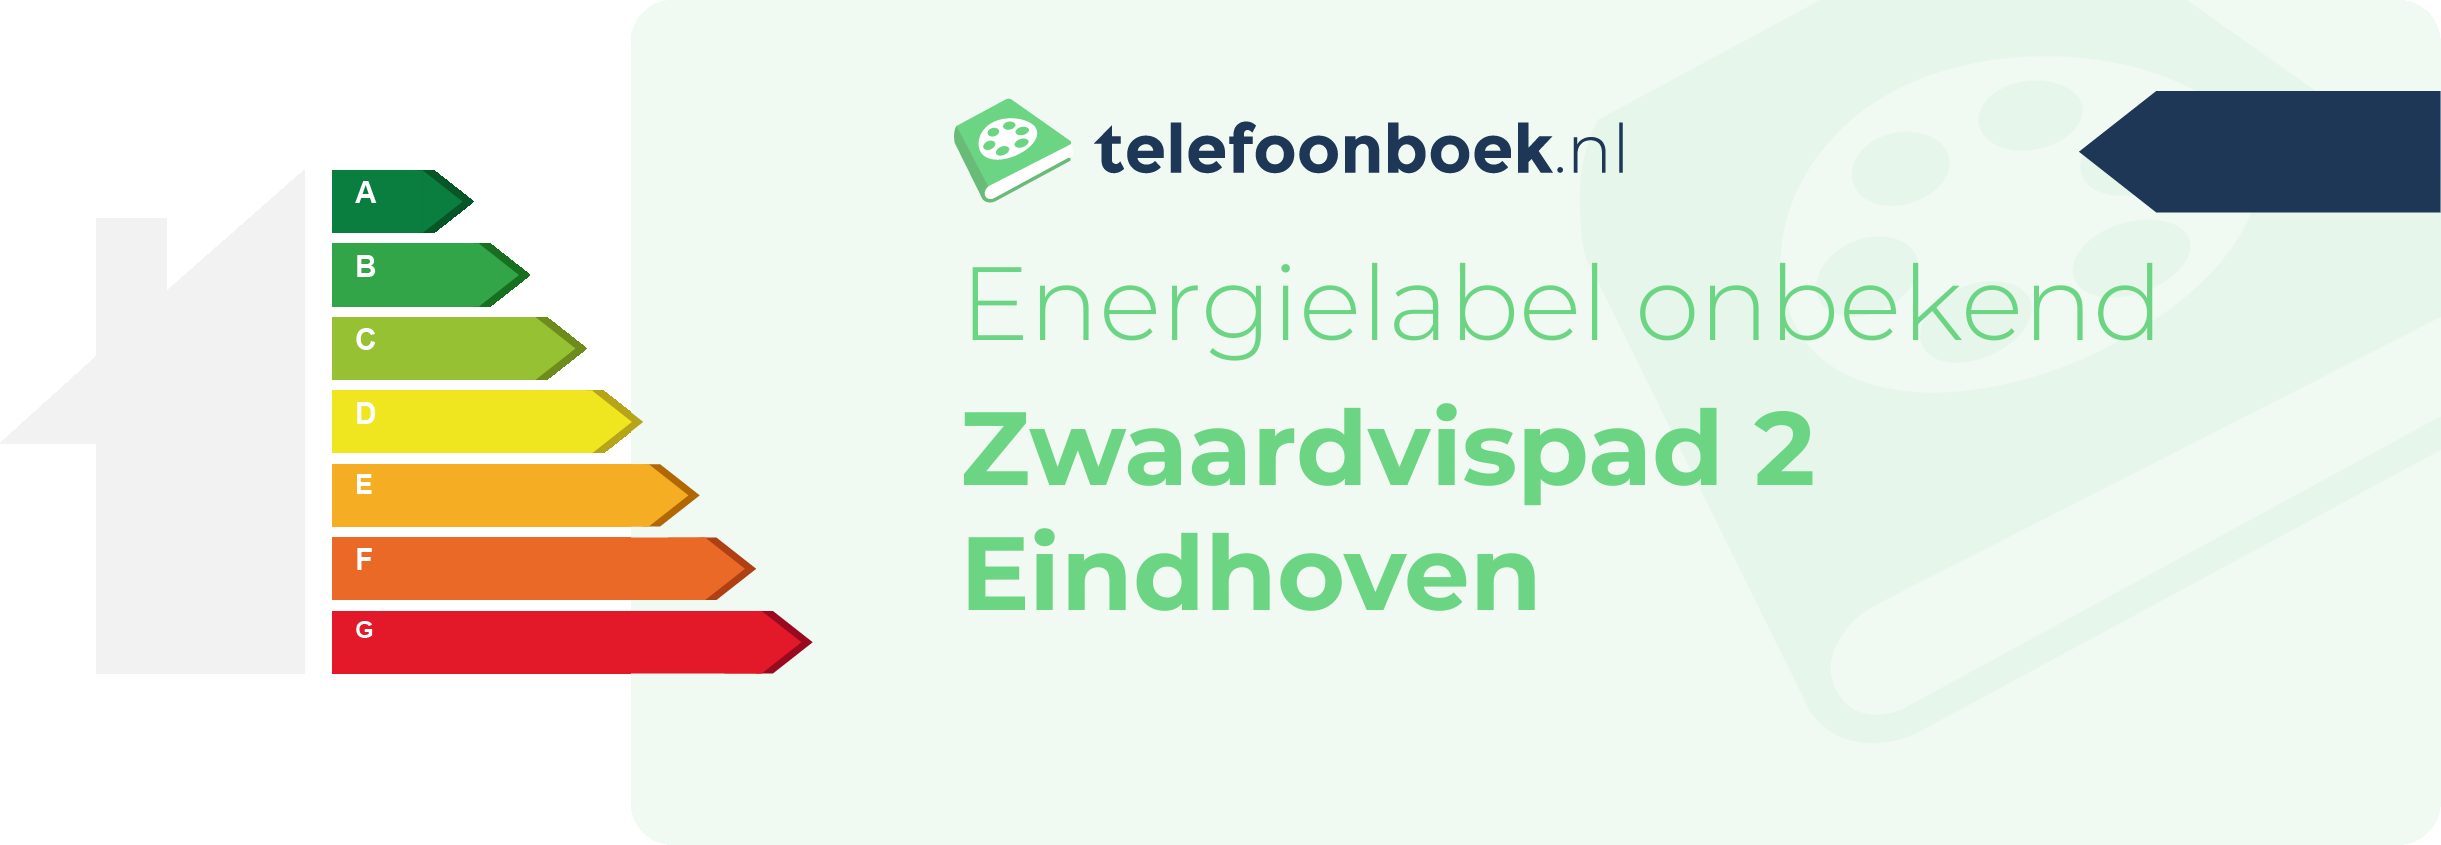 Energielabel Zwaardvispad 2 Eindhoven